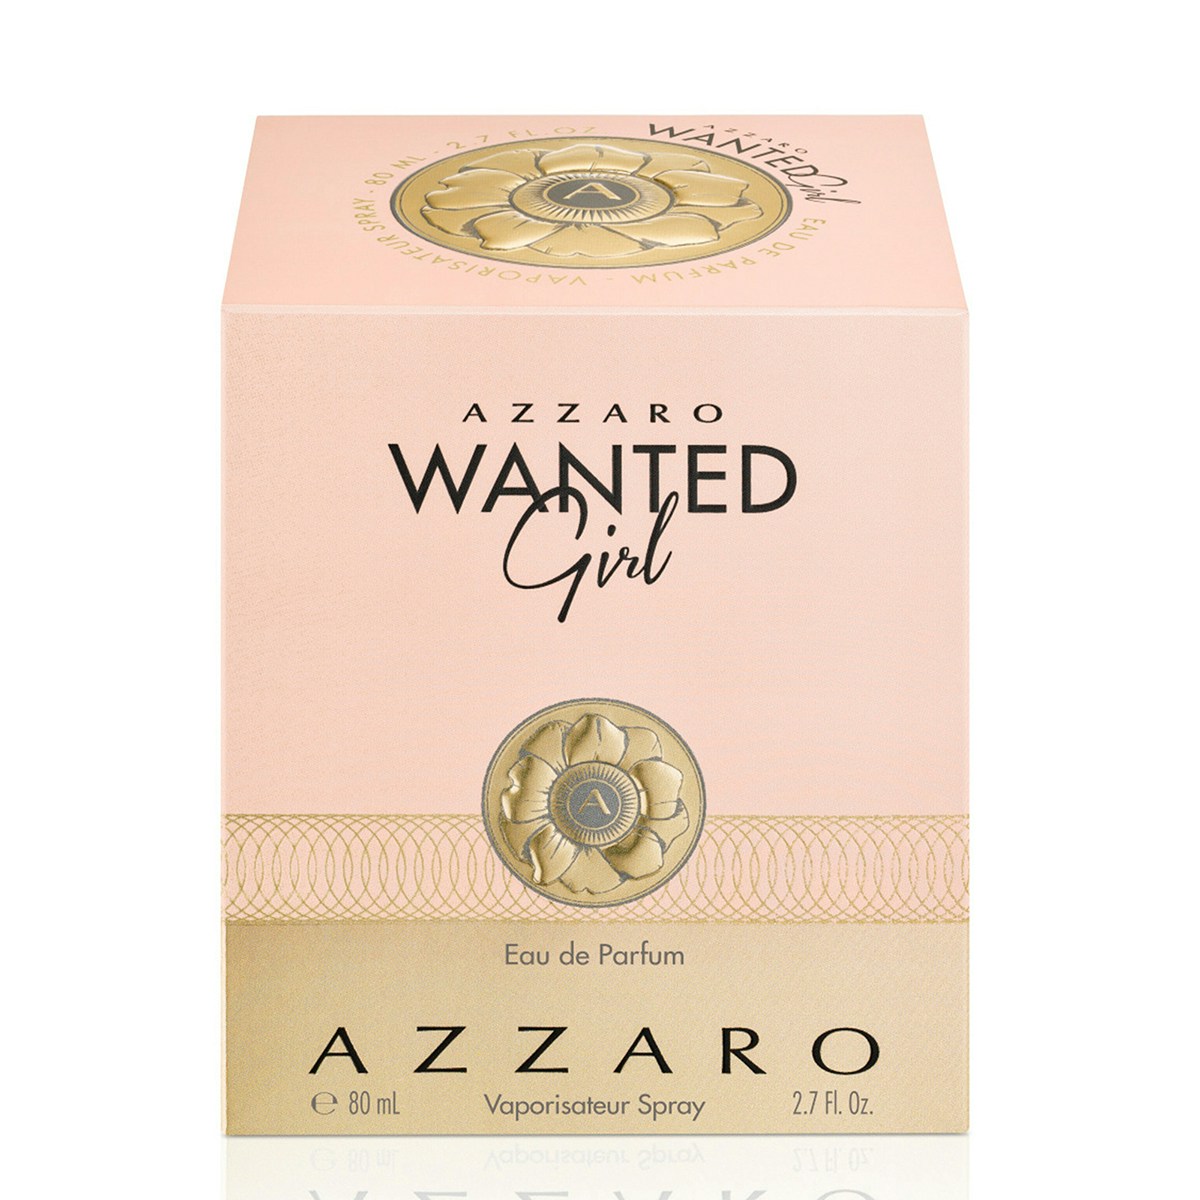 Azzaro Wanted Girl Eau De Parfum 80ml Spray